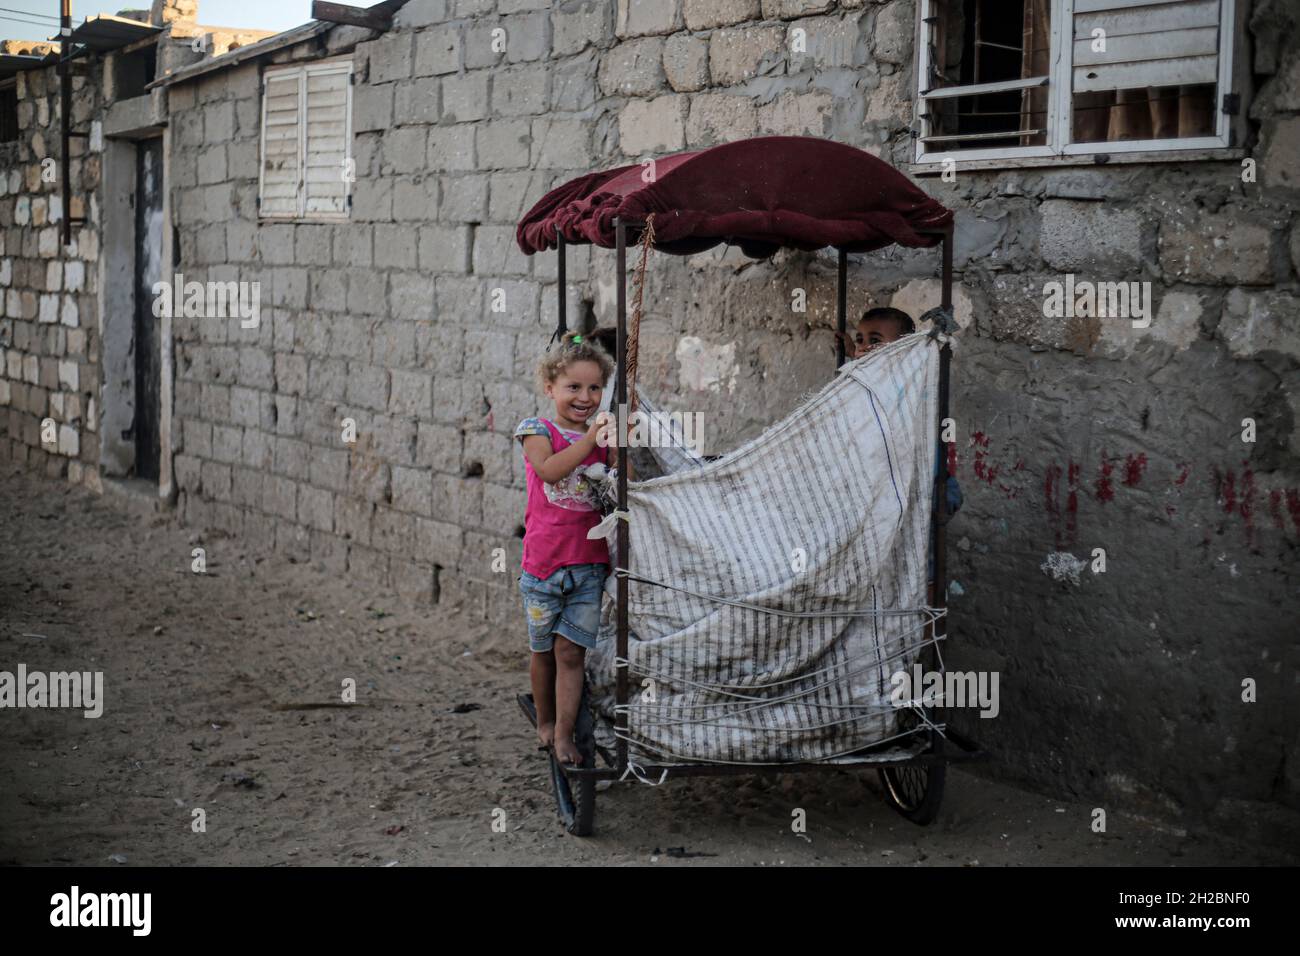 Internationaler Tag zur Beseitigung der Armut in Gaza. Palästinensische Kinder spielen vor ihren Häusern in einer armen Nachbarschaft am Stadtrand von Khan Yunis im südlichen Gazastreifen. Die Kinder von Gaza leben unter dem Gewicht der Armut und der seit Jahren gegen den Gazastreifen verhängten israelischen Blockade. Palästina. Stockfoto